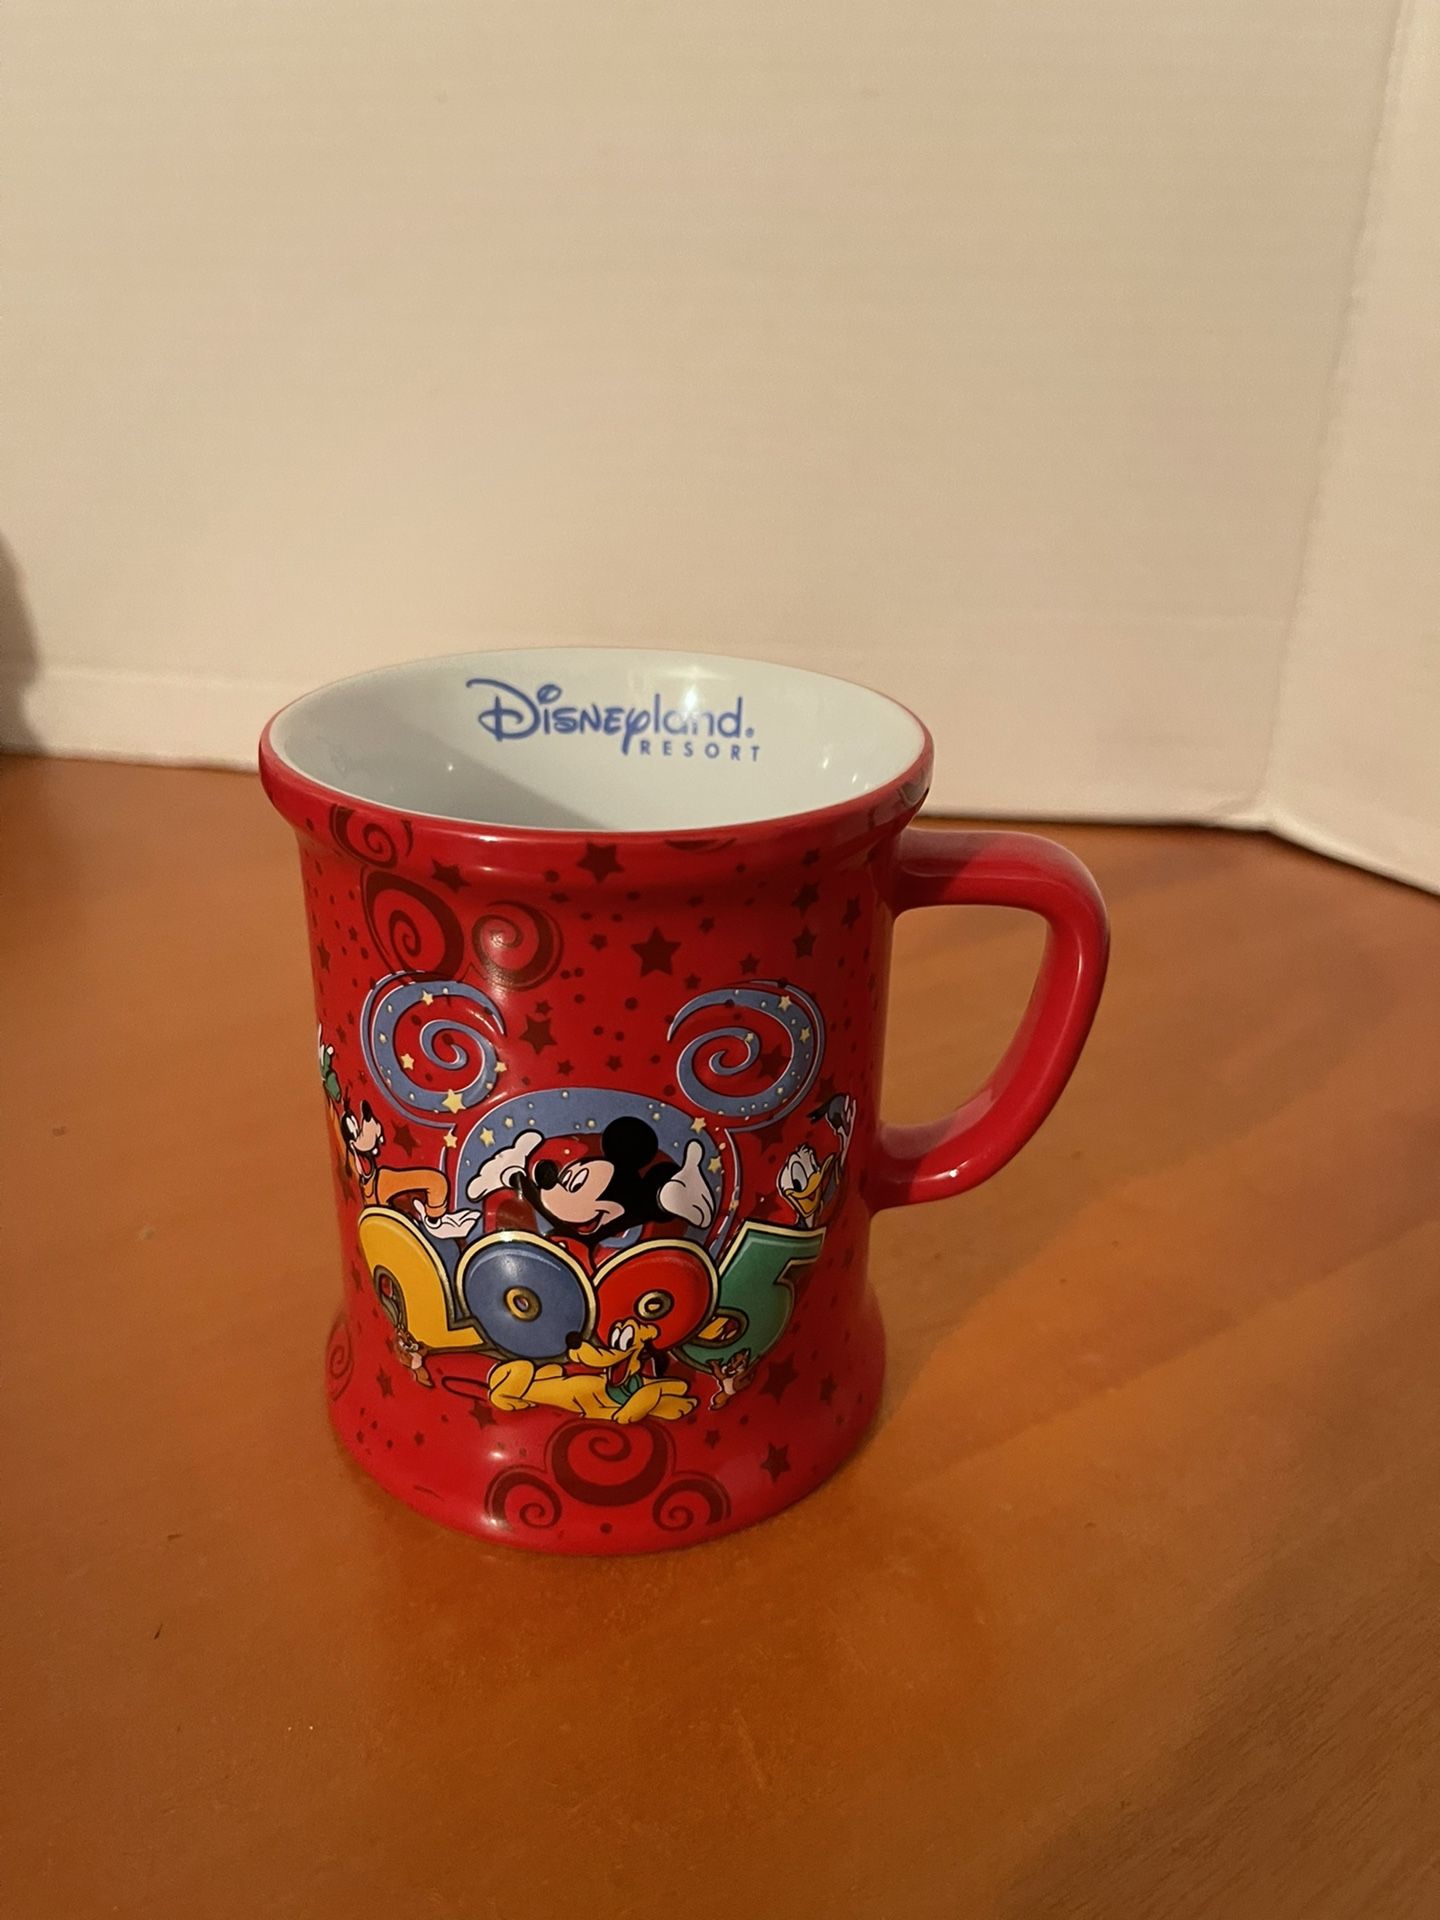 2005 Walt Disney World ceramic mug